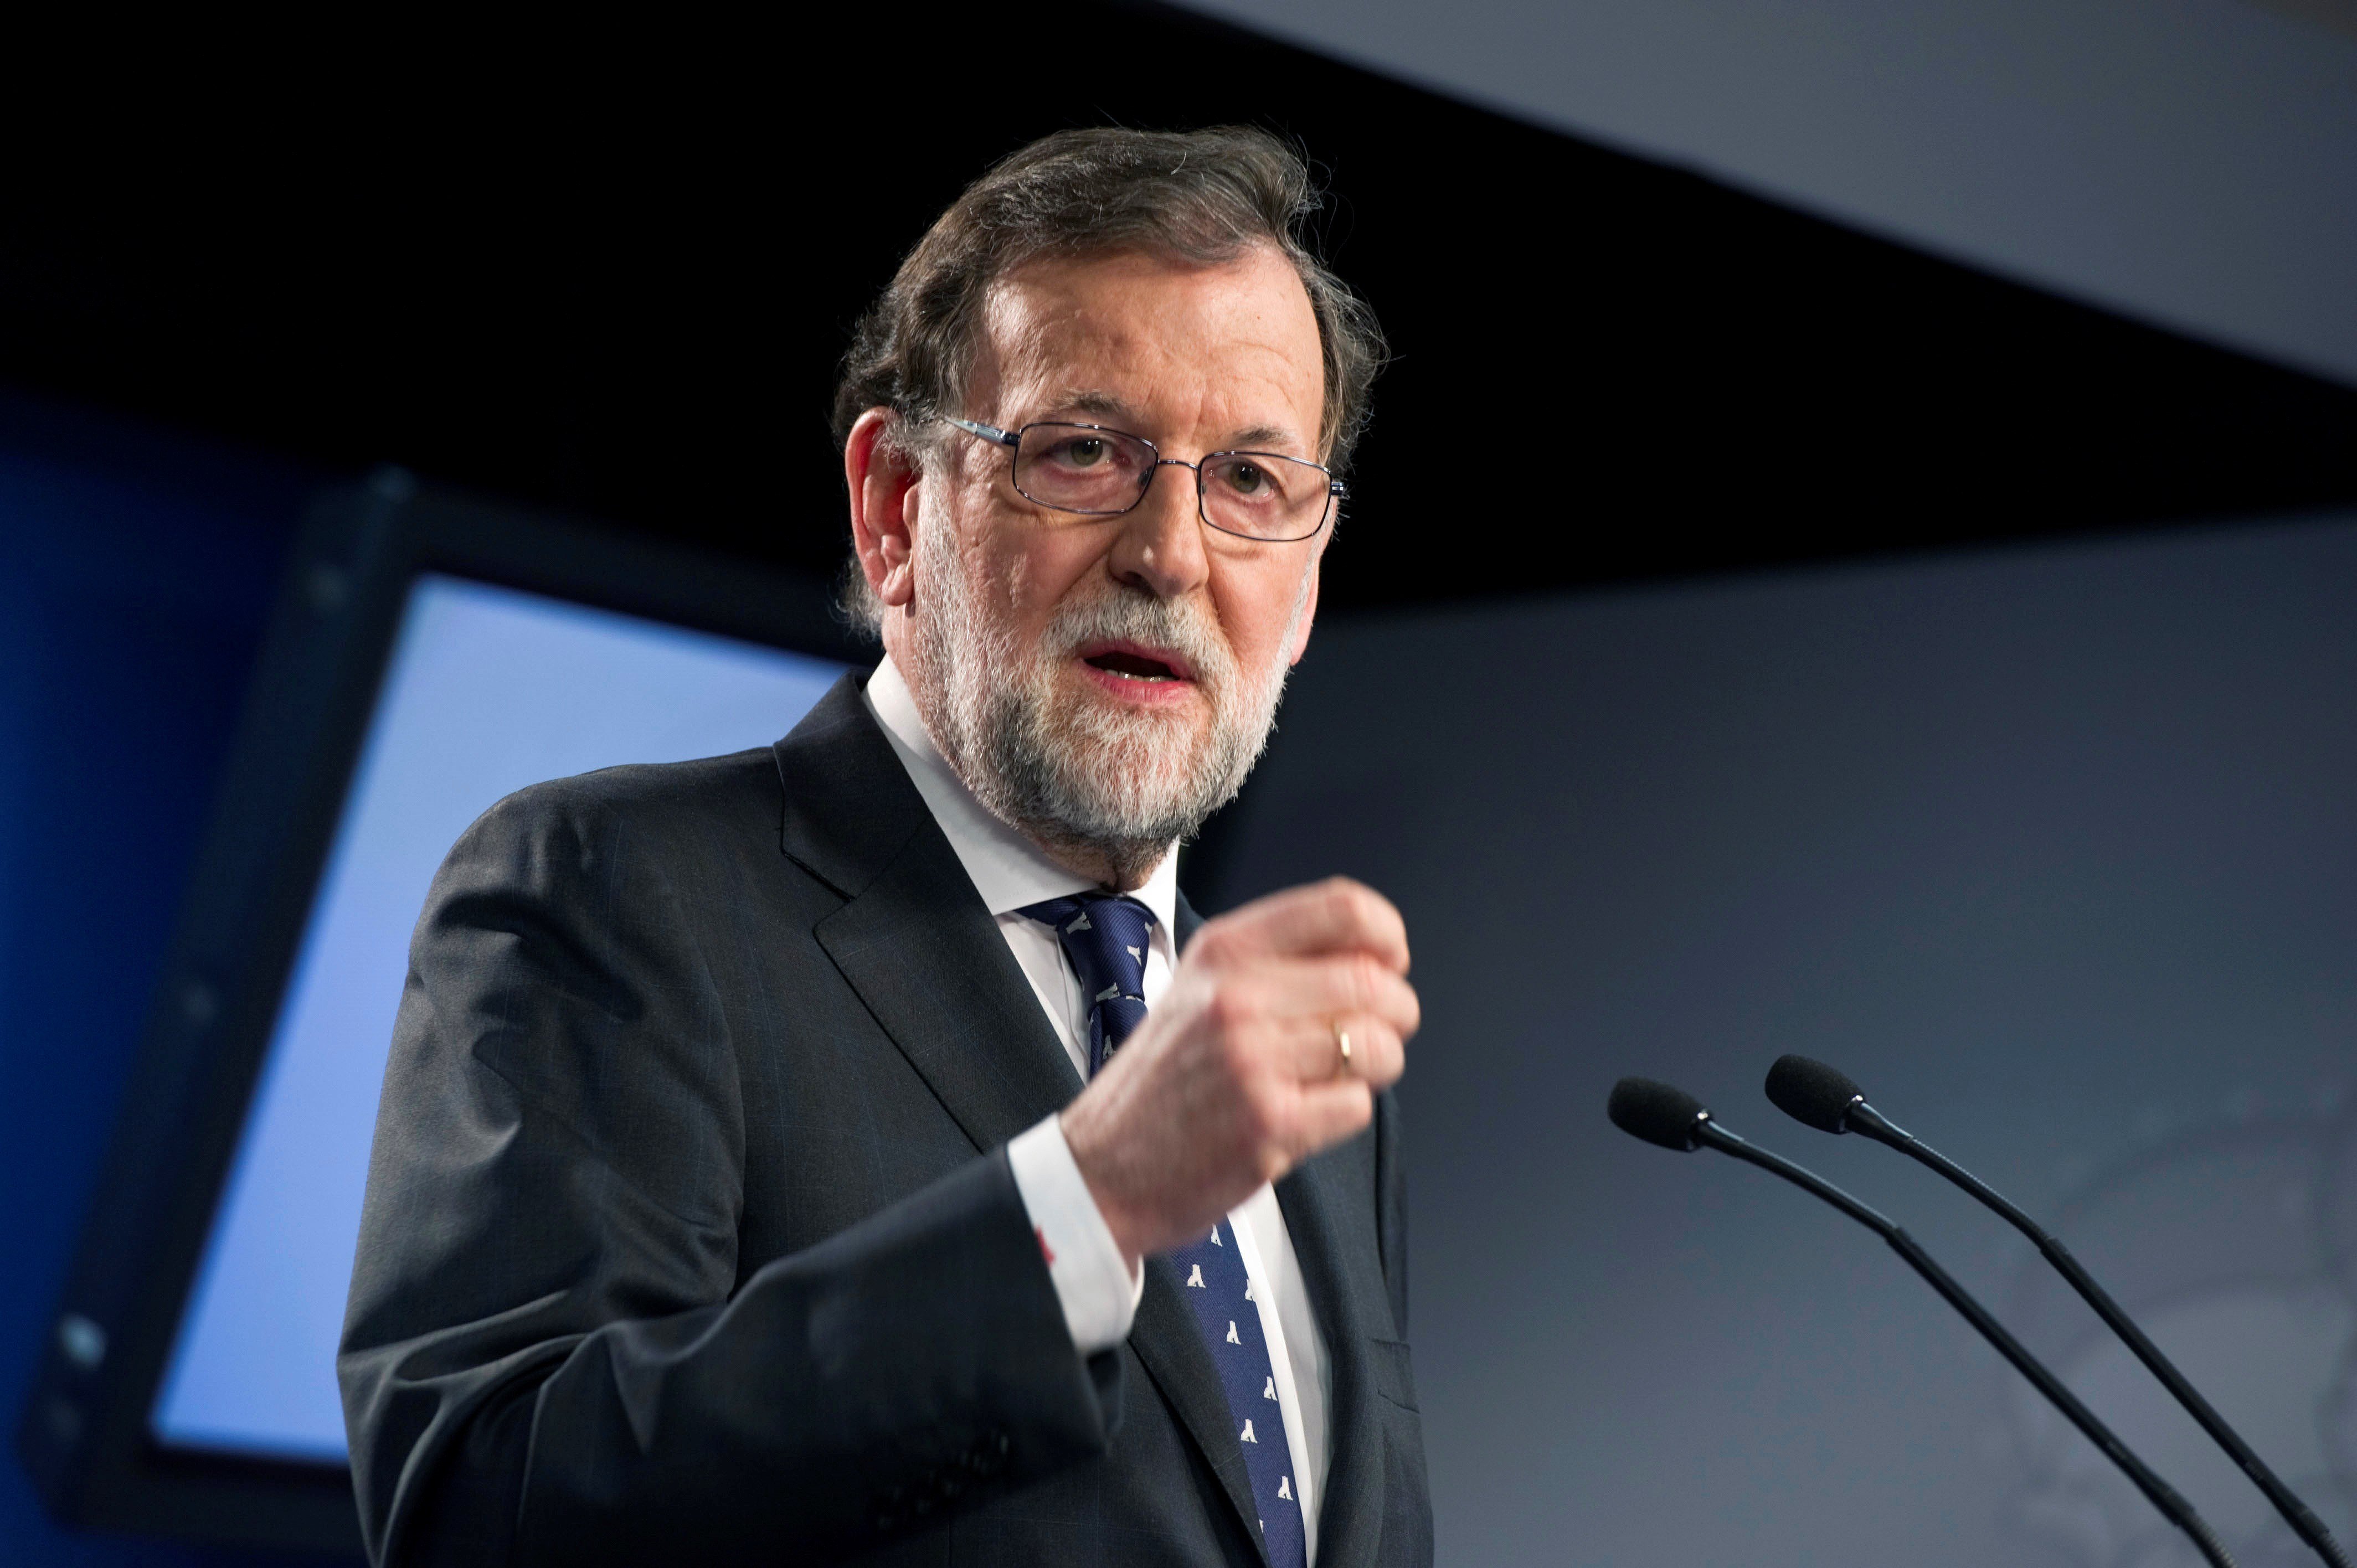 Rajoy assegura fer "tot el possible" per recuperar la "sensatesa" a Catalunya